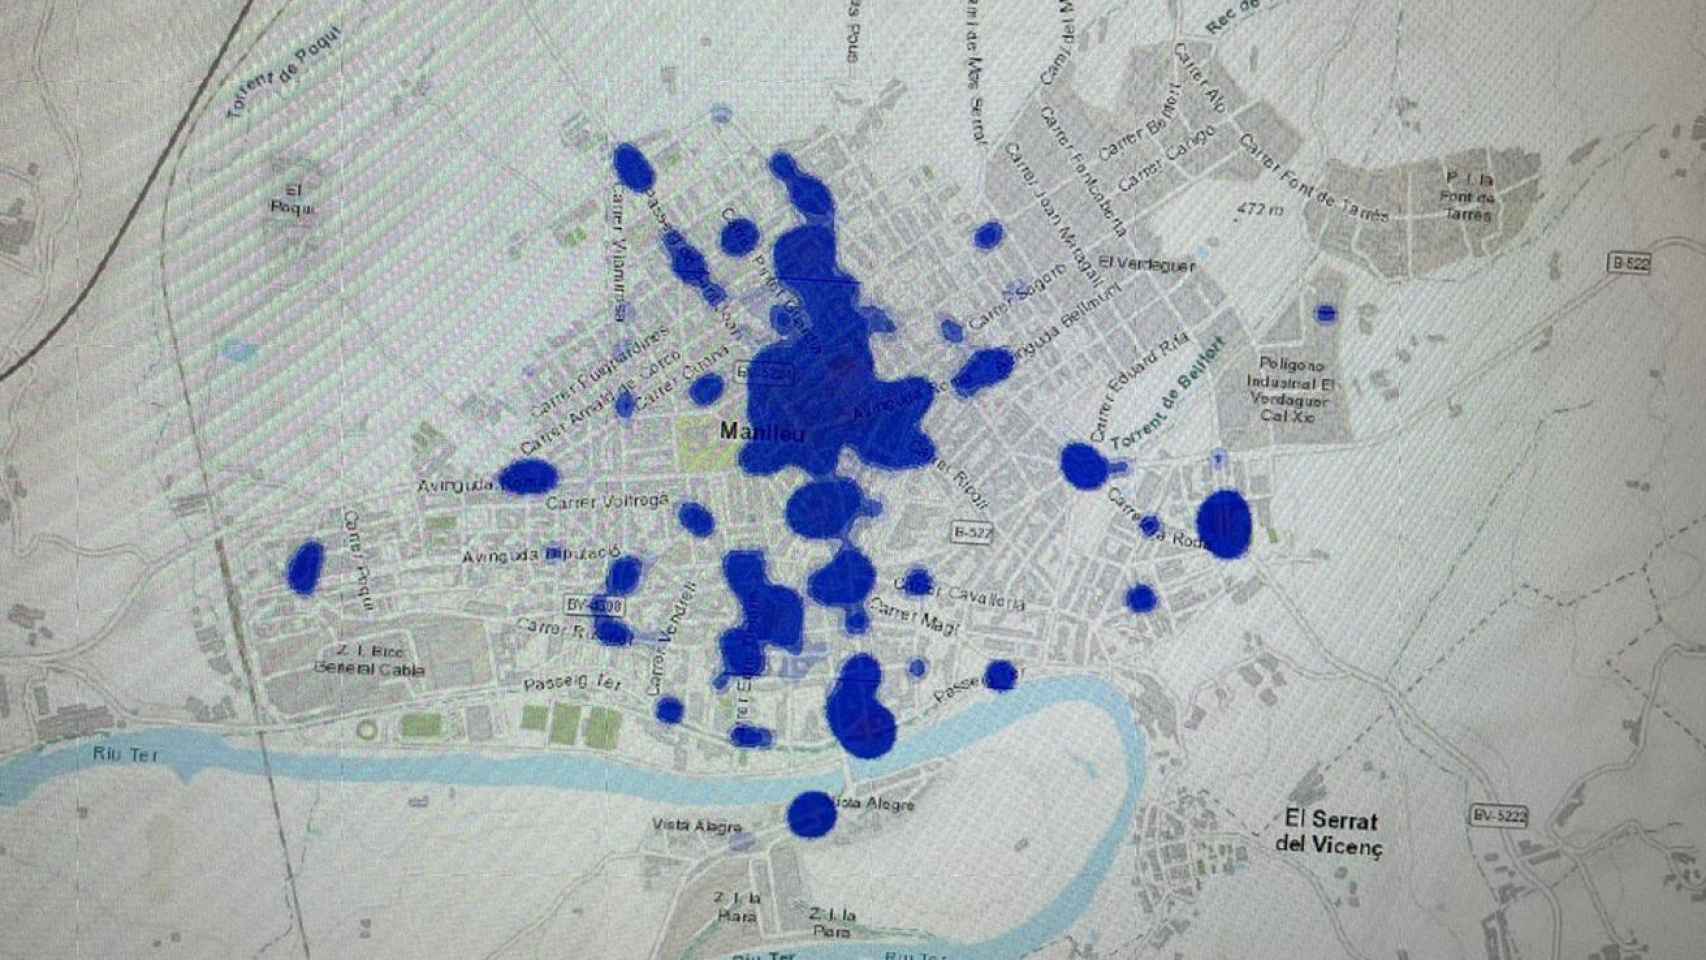 Mapa de calor con los delitos localizados en Manlleu en la segunda mitad de 2021. Arriba, en el centro, el barrio del Erm.